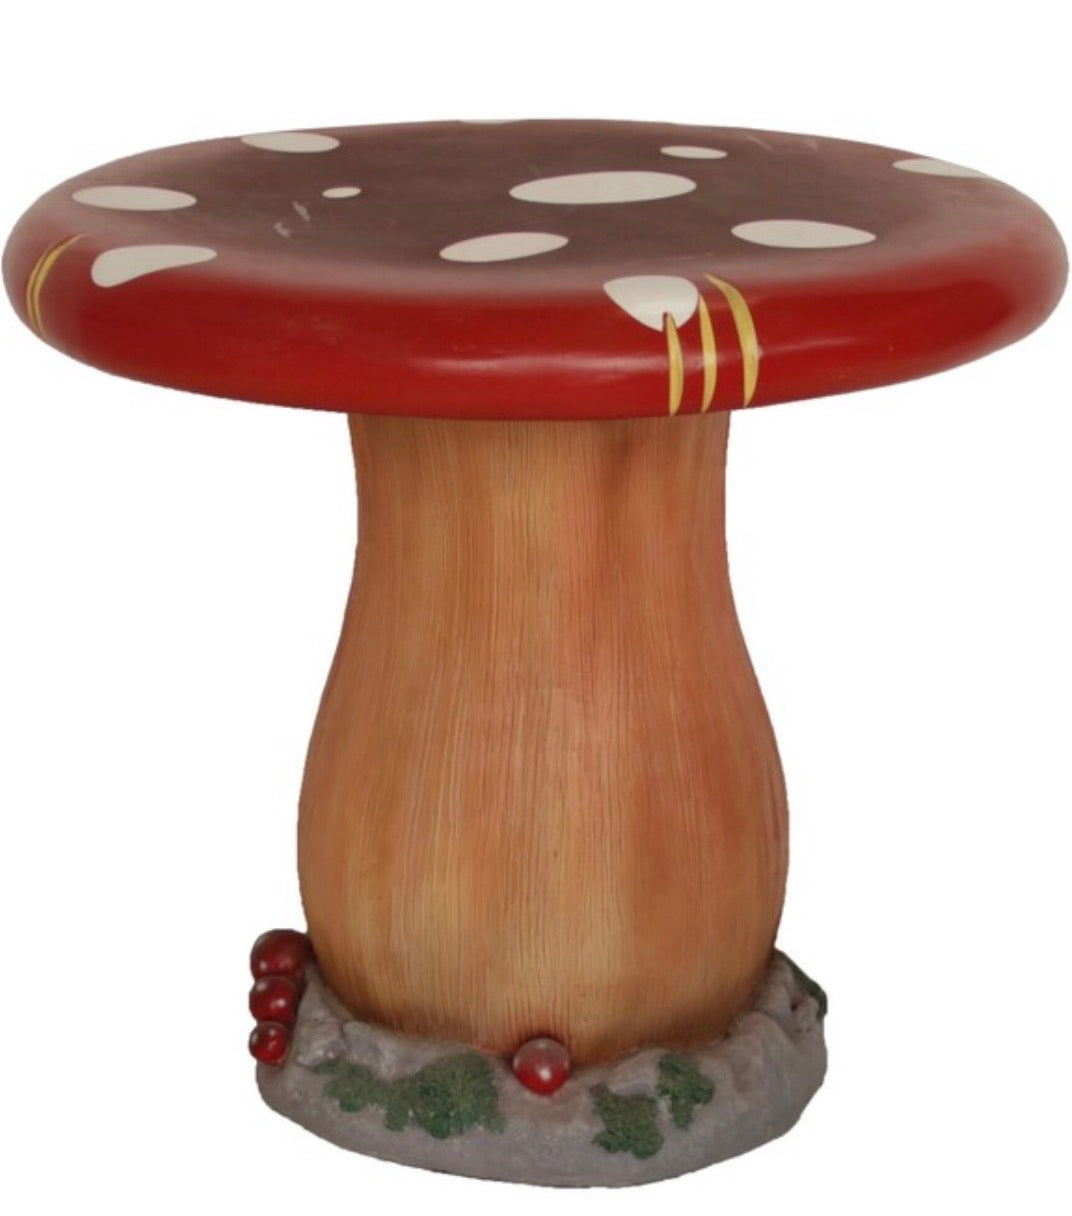 Mushroom Stool Table